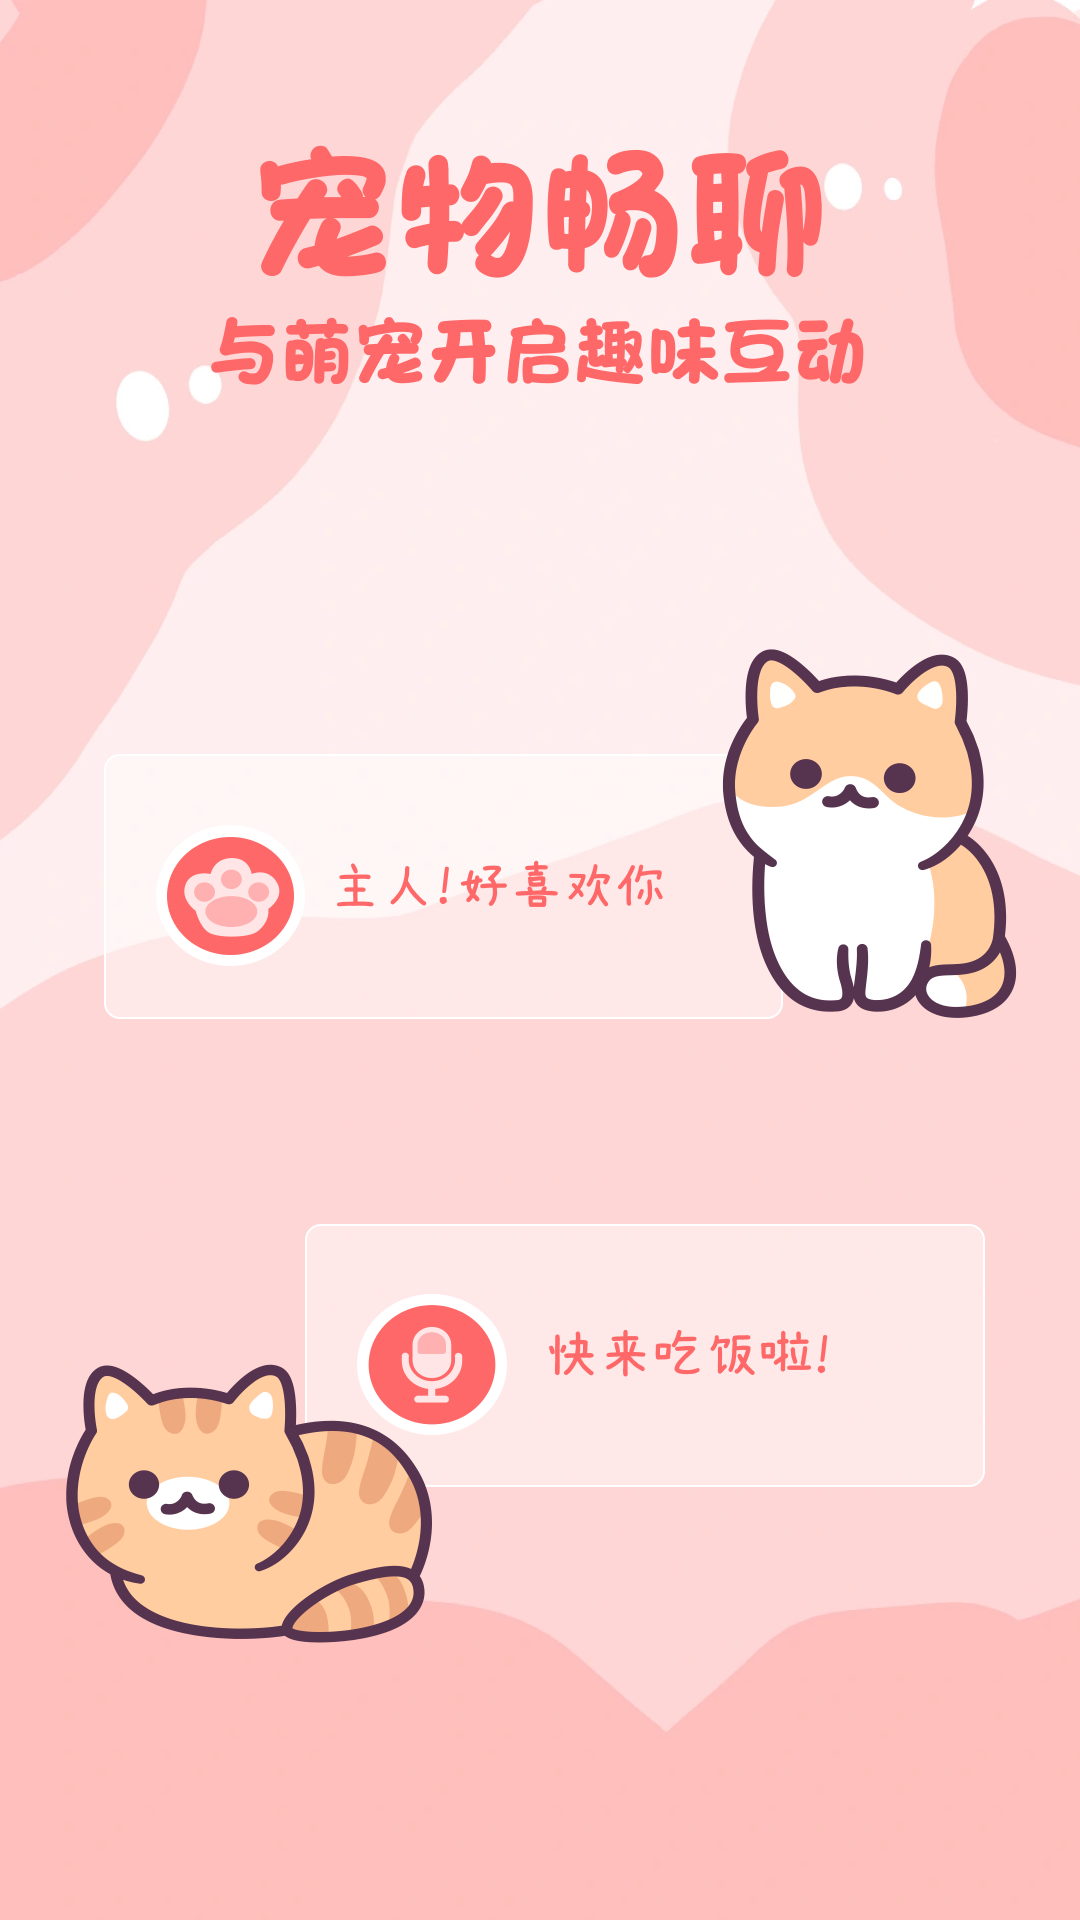 猫狗畅聊翻译器小程序免费版下载图片1